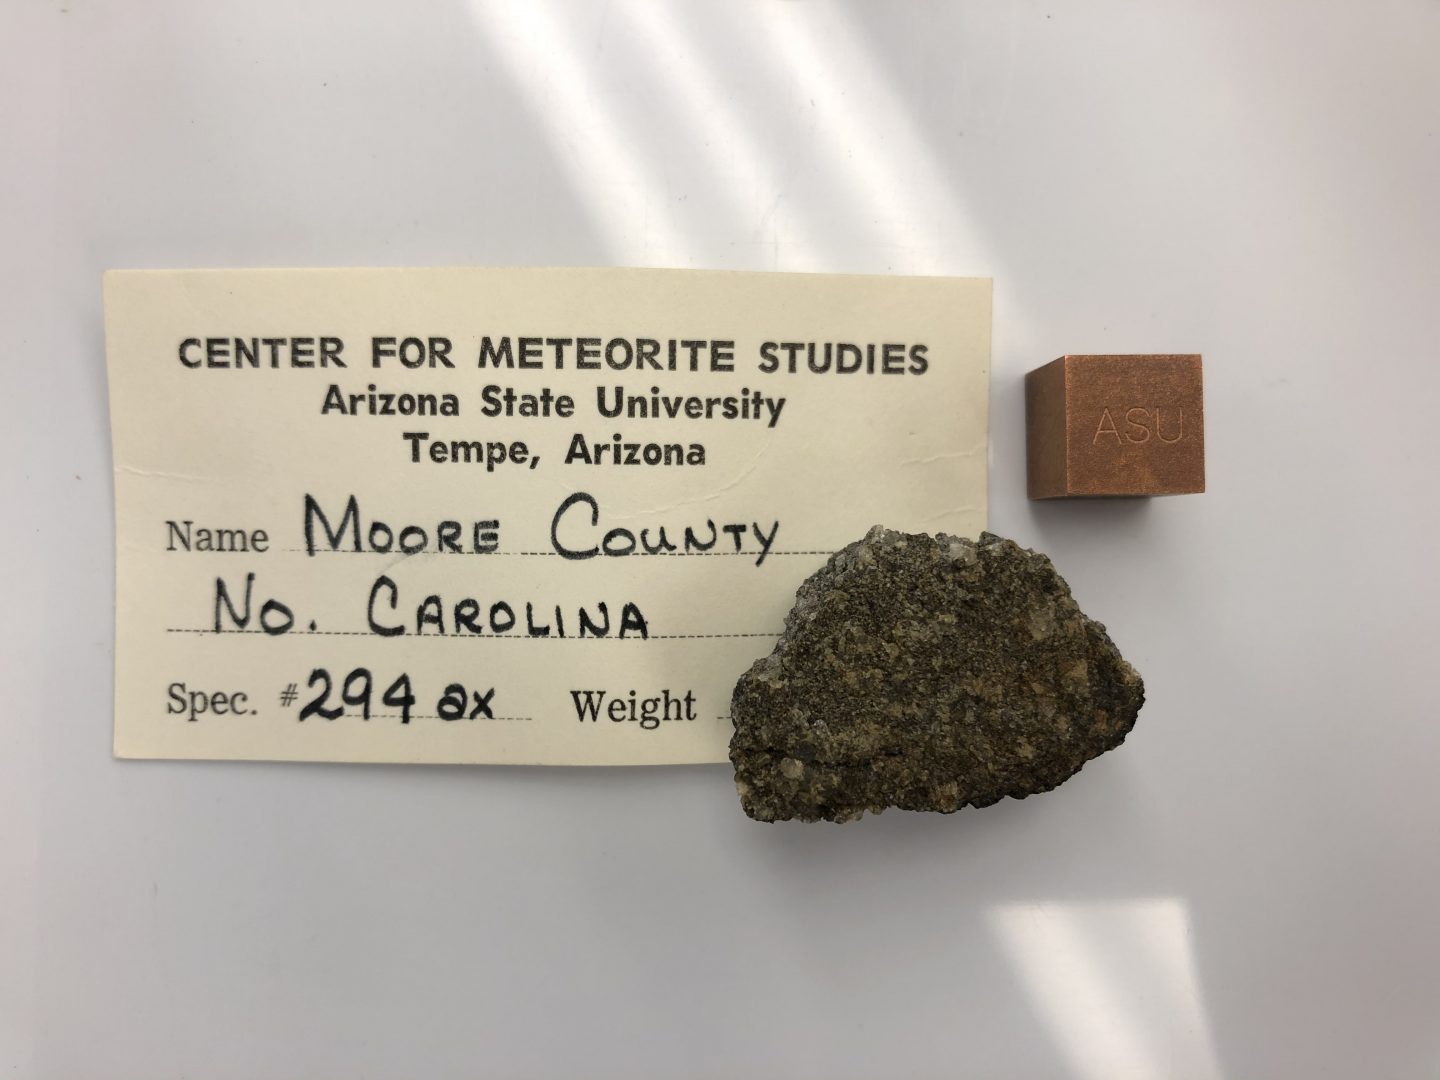 Moore County meteorite